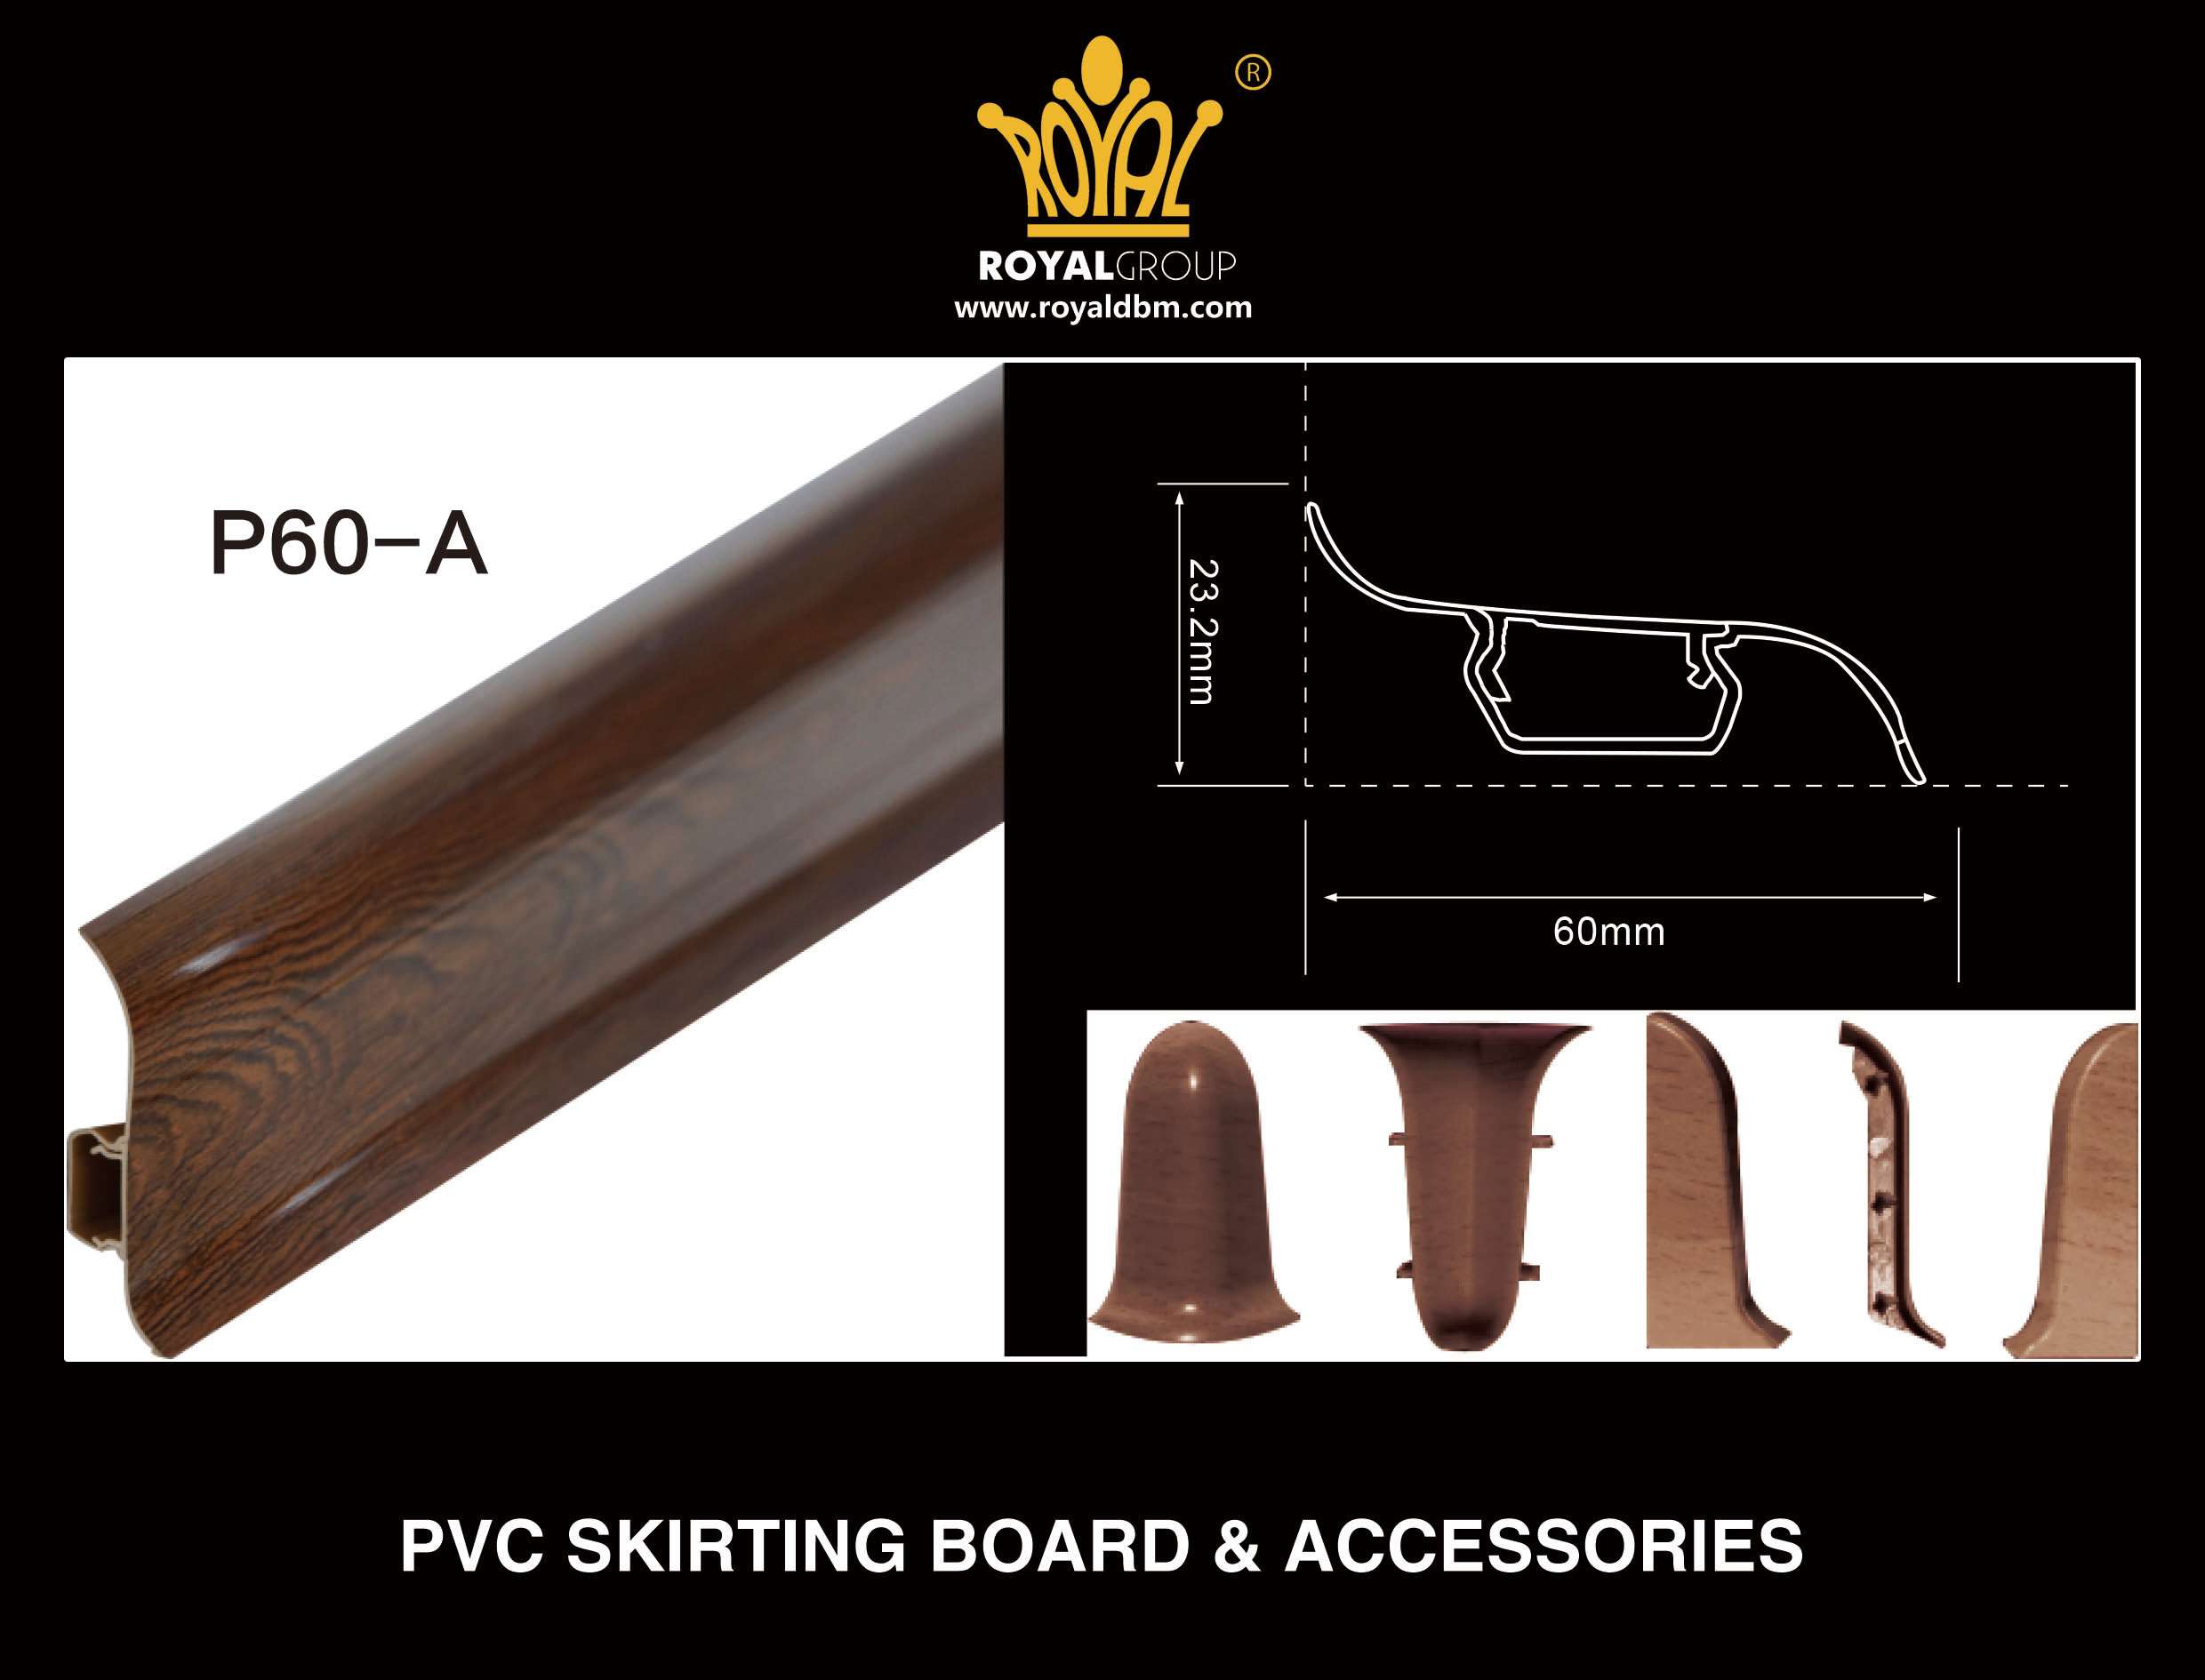 Pvc Skirting Board P60 A Royal Group